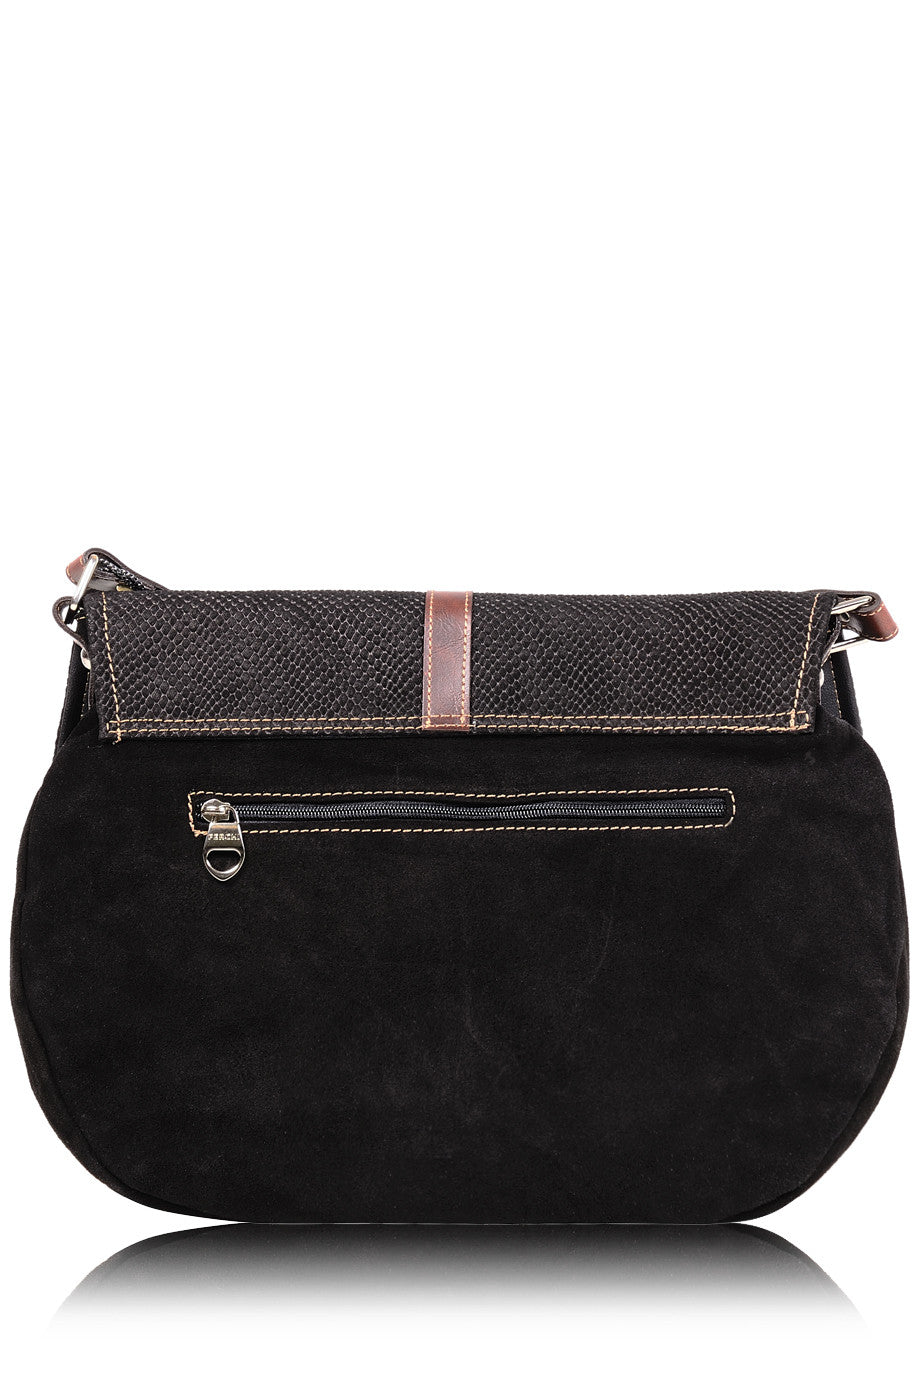 LEIA Black Cashmere Bag